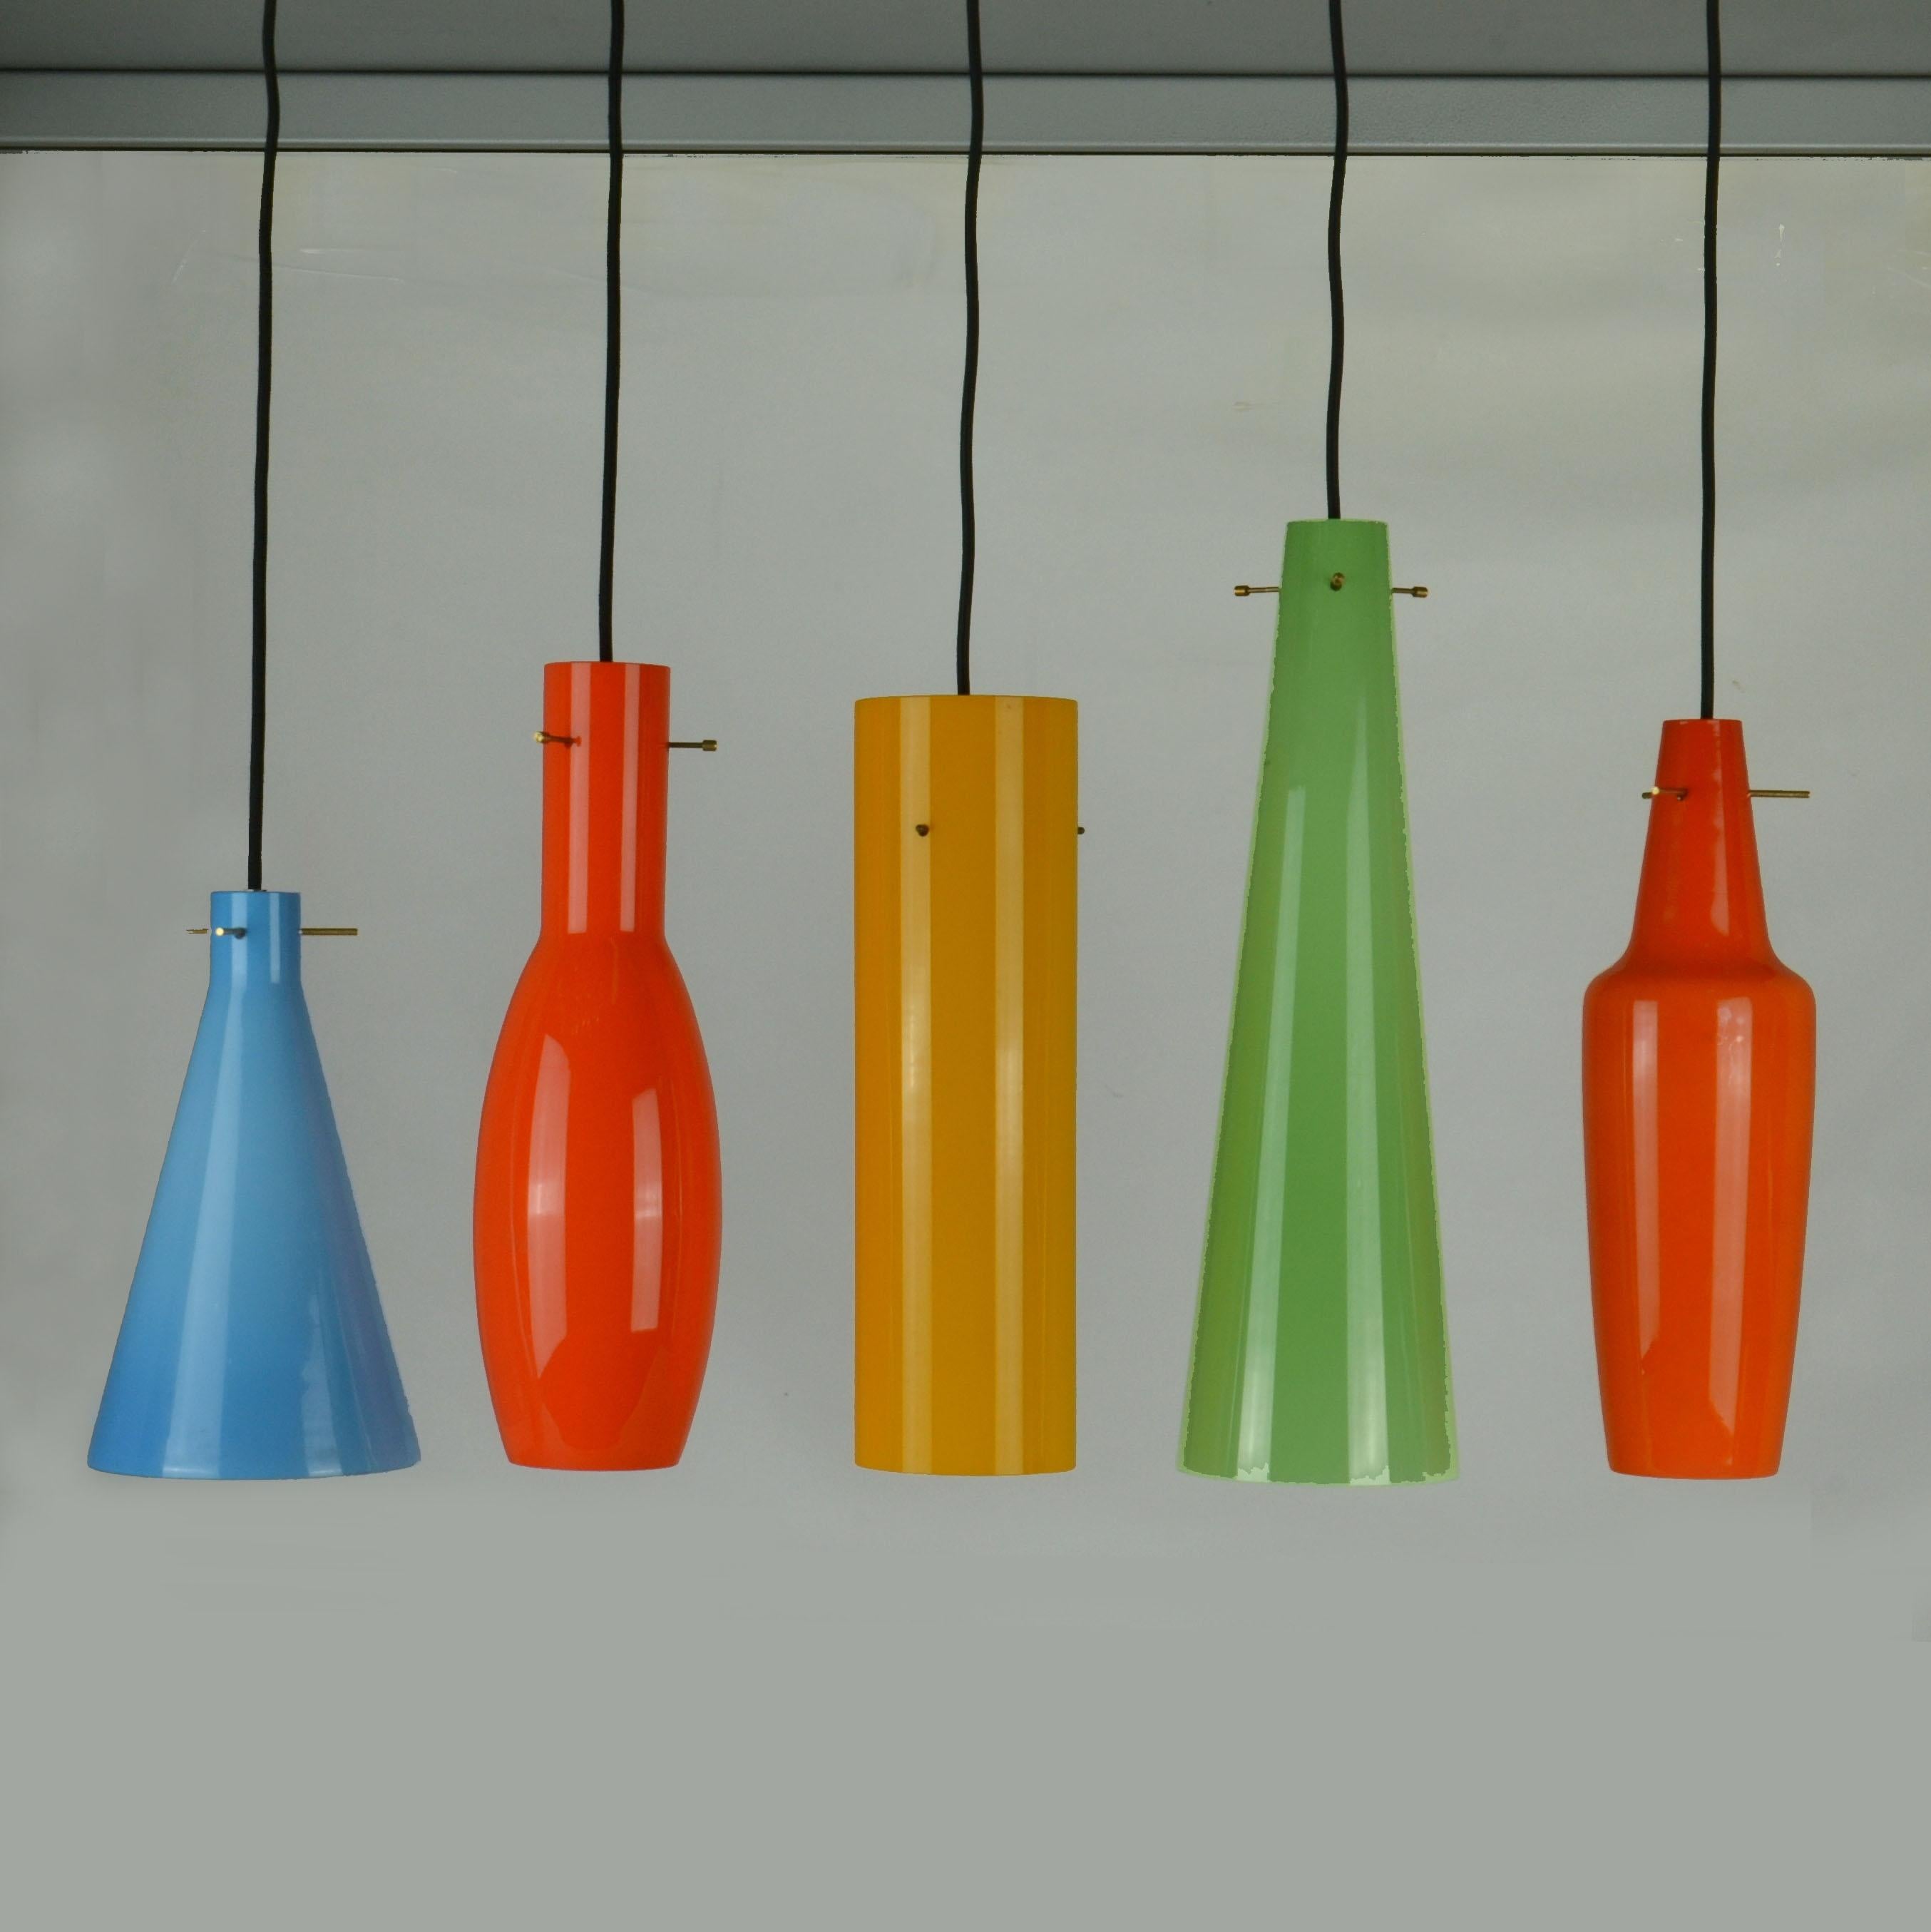 Cinq pendentifs en verre Vistosi de différentes formes et tailles en orange foncé, bleu, jaune, orange clair et vert, années 1950, Italie.
Les abat-jours en verre sont suspendus à une structure centrale de trois broches, un système à trois tiges en